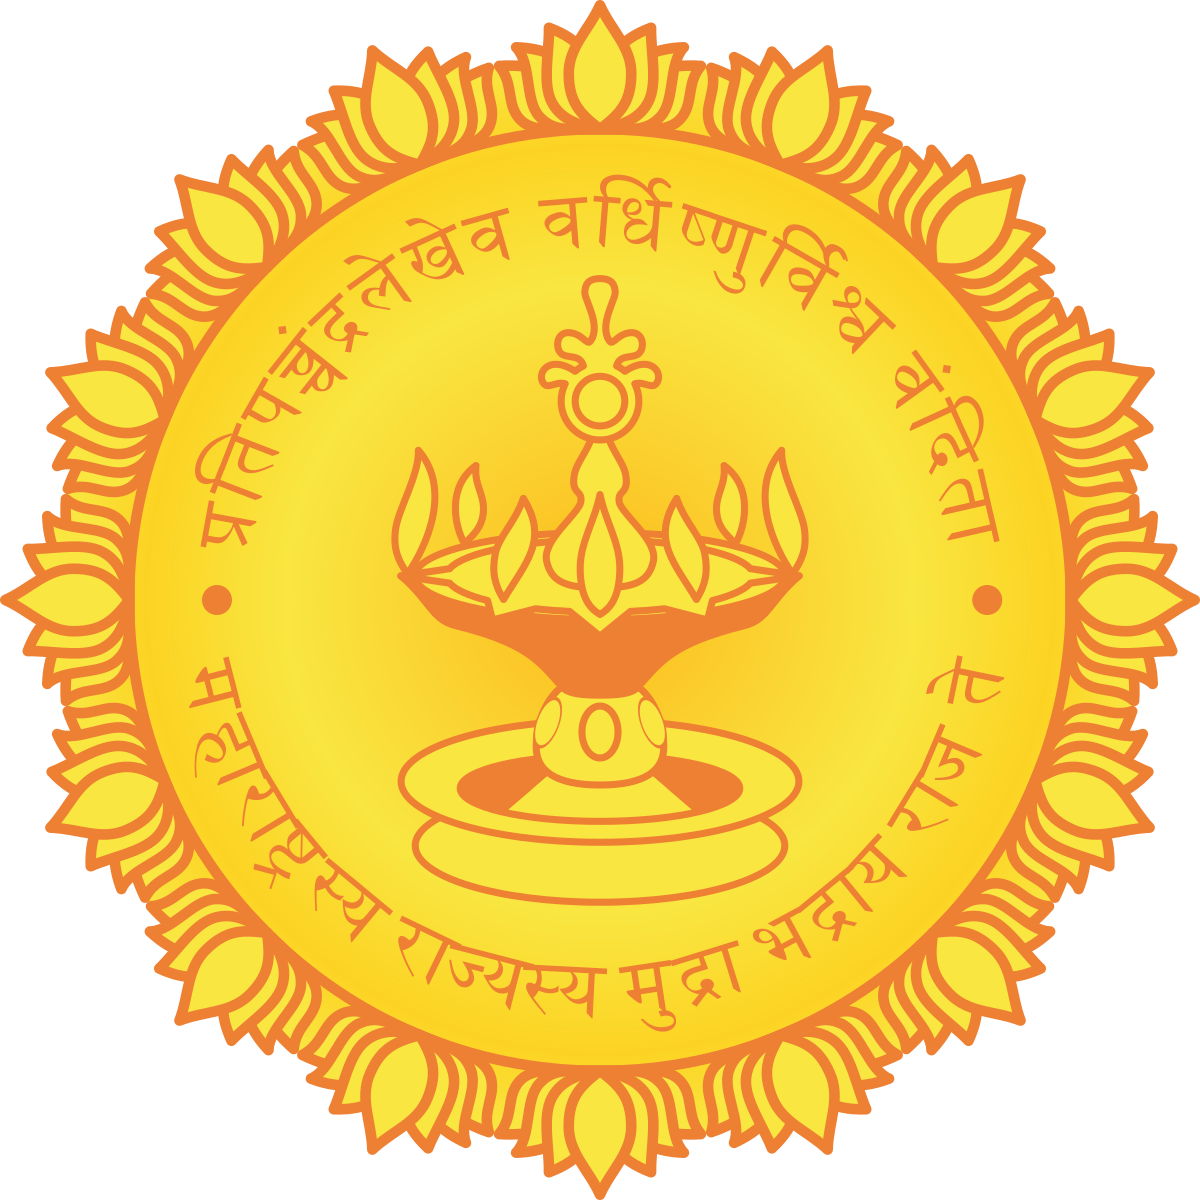 Emblem of Bihar - Wikipedia